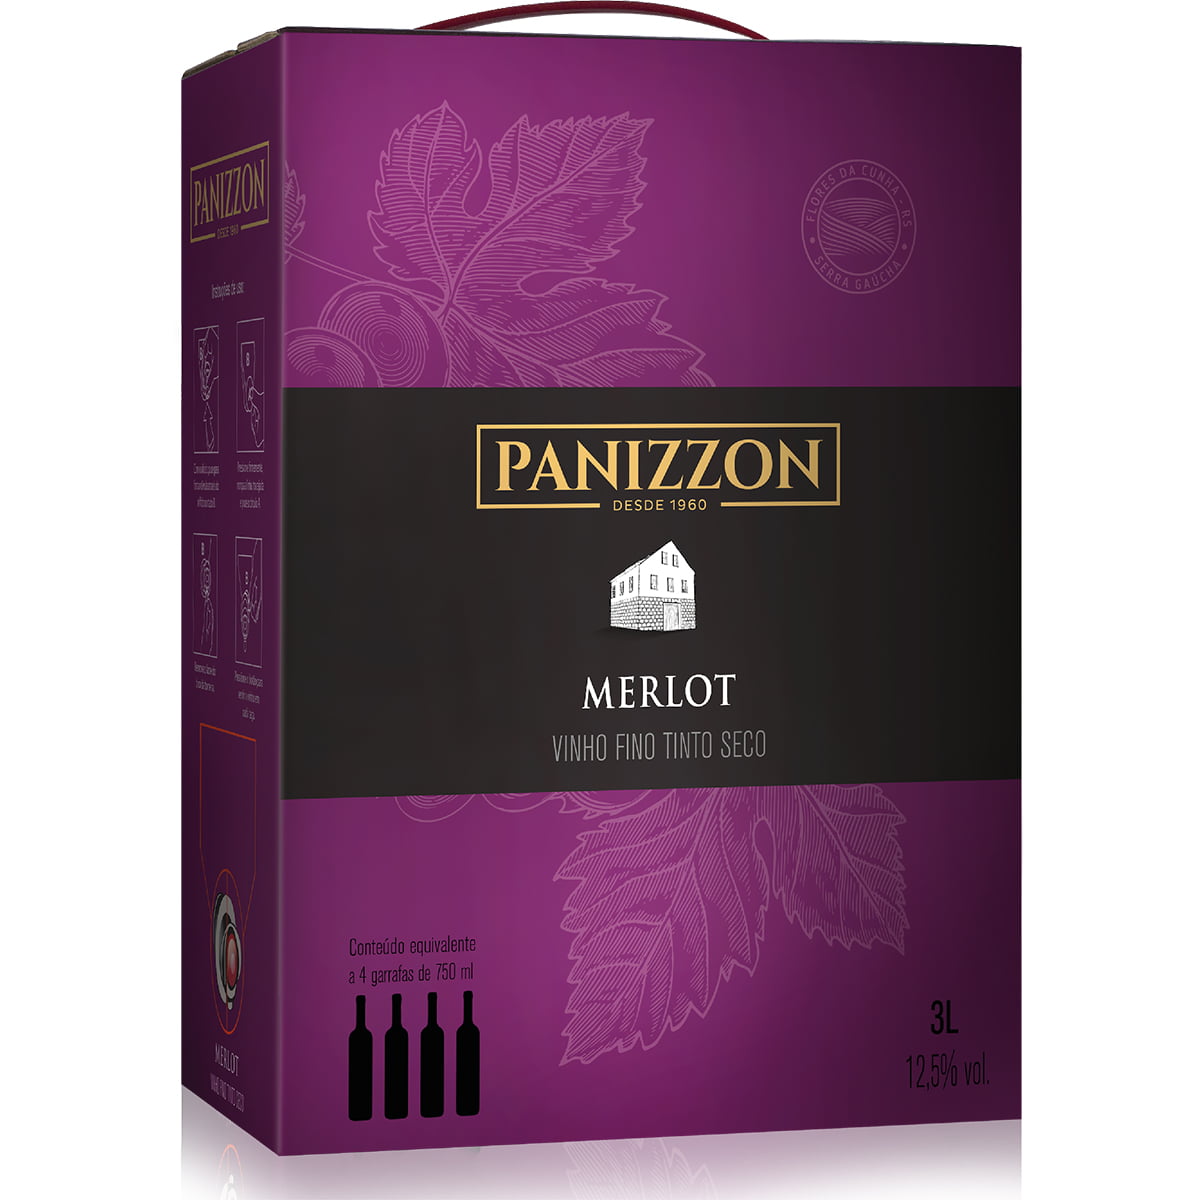 Vinho Panizzon Merlot Tinto Seco Bag in Box 3L